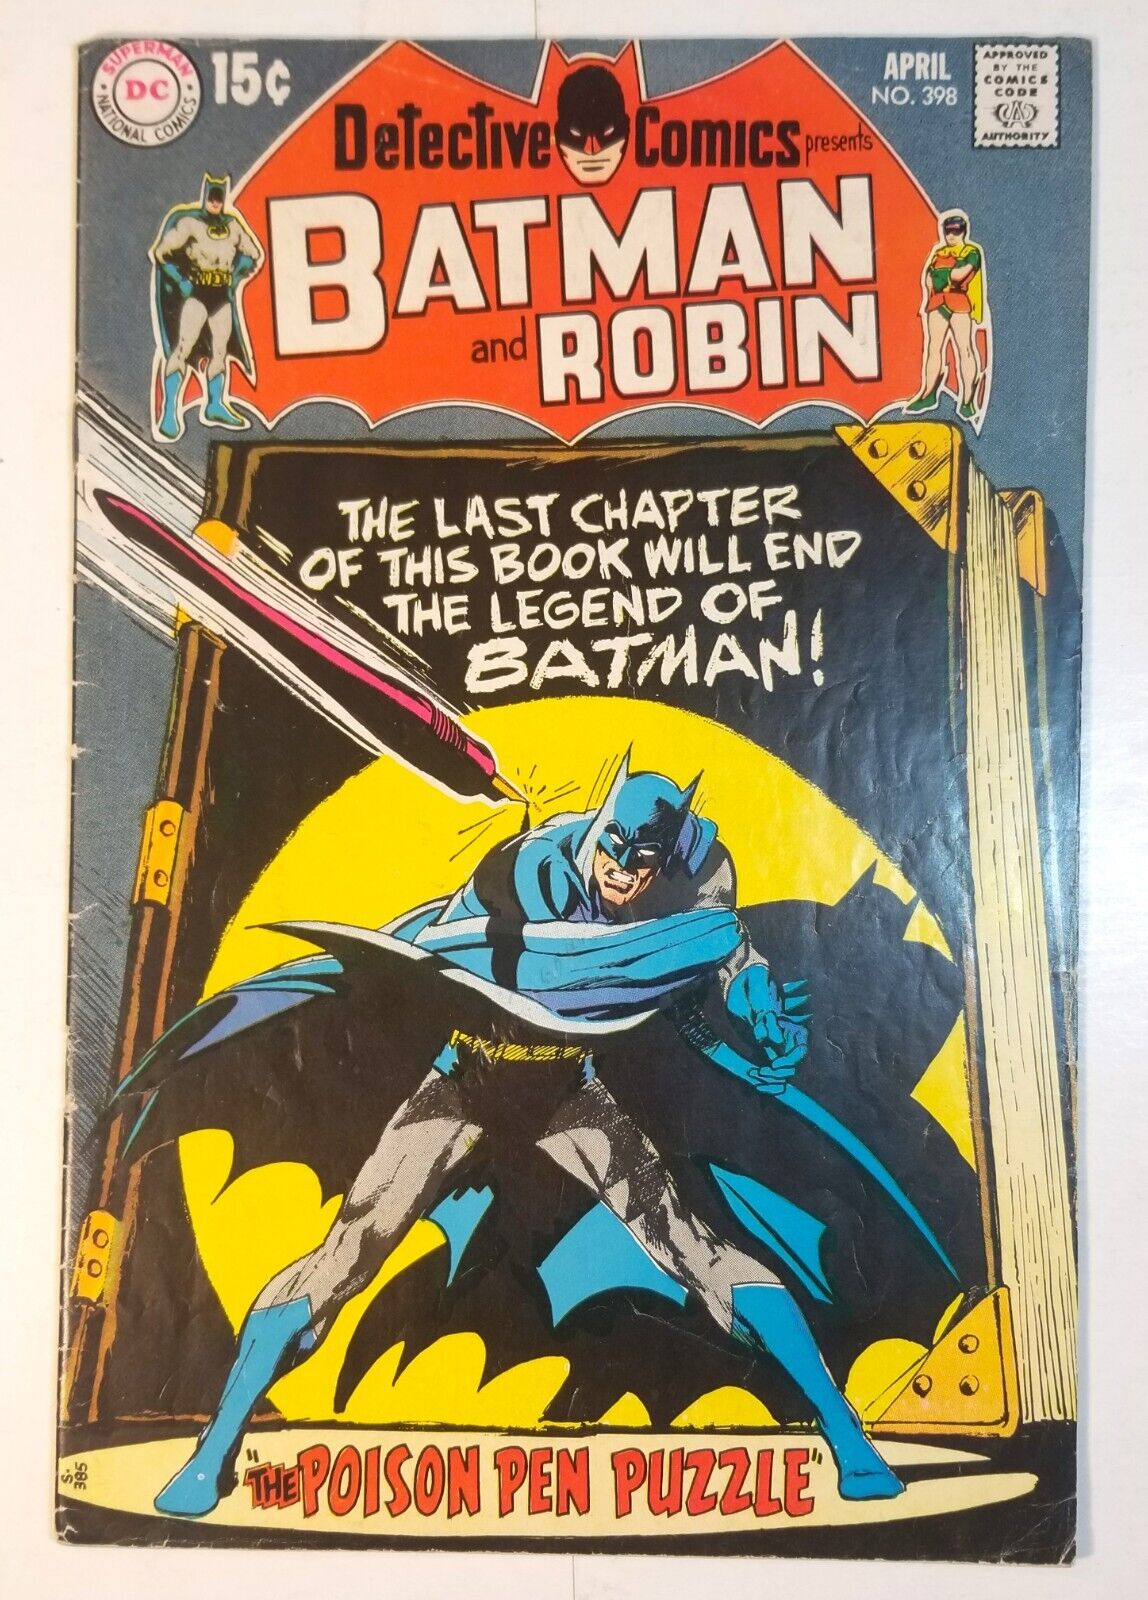 DETECTIVE COMICS #398 W/BATMAN & ROBIN DC COMICS APRIL 1970 VG+ 4.5 NEAL ADAMS-C